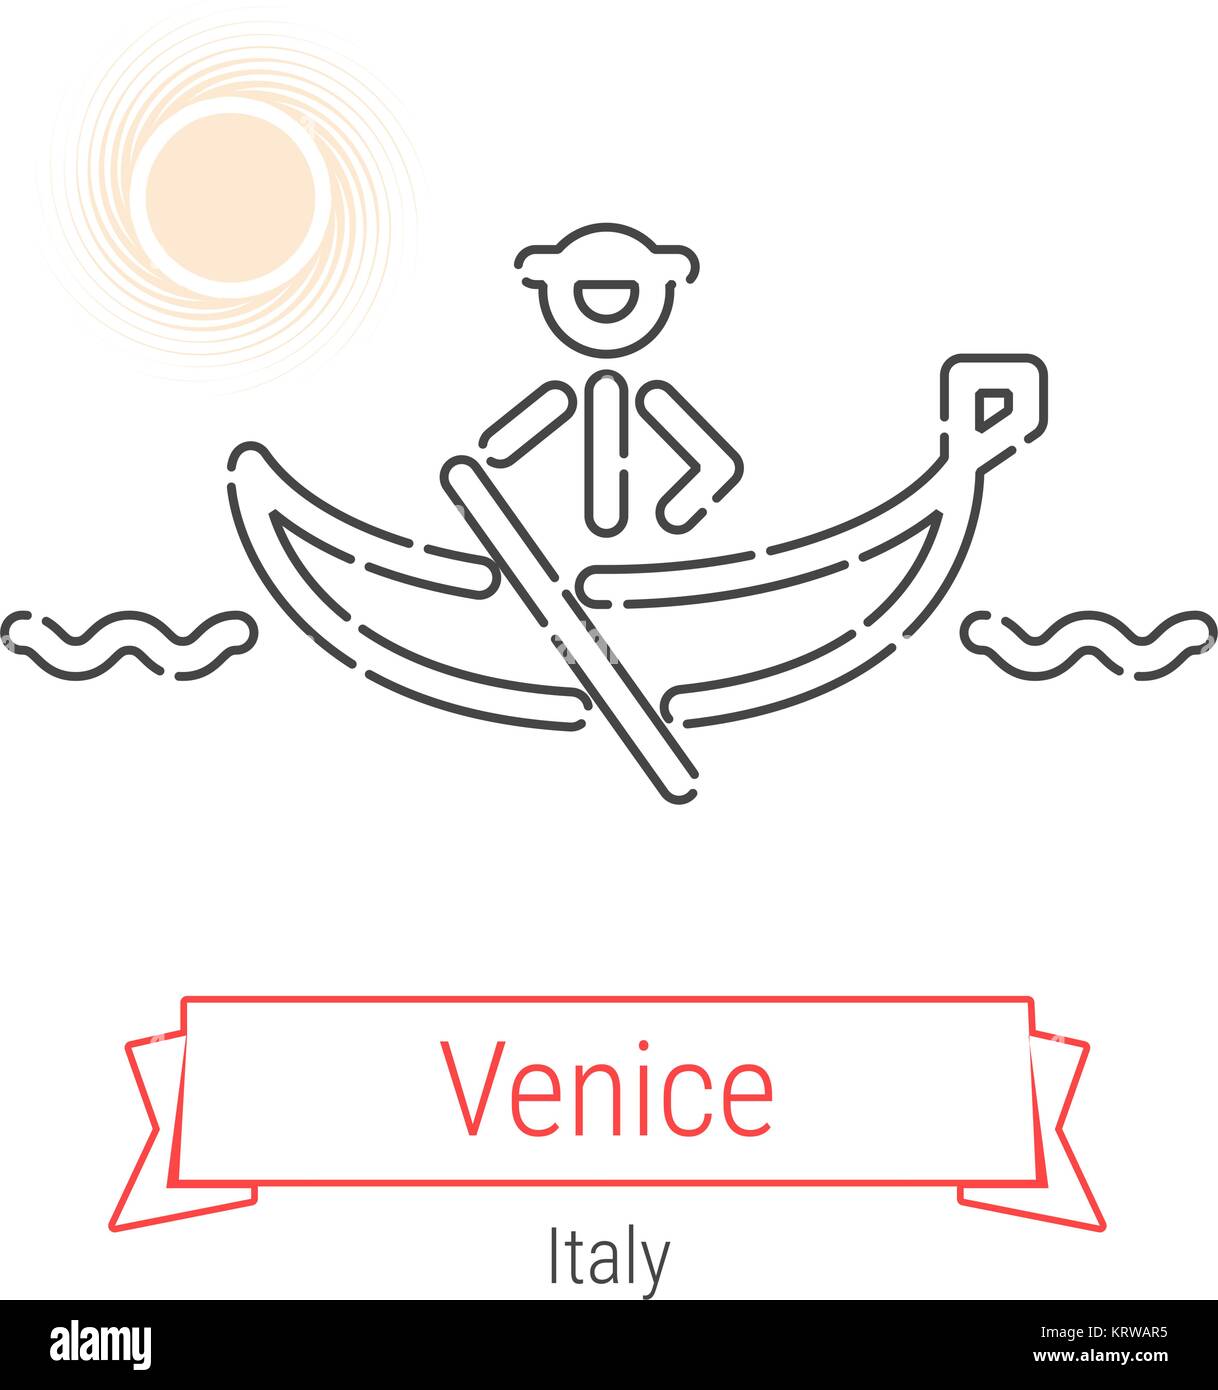 Venise, Italie l'icône de la ligne du vecteur avec ruban rouge isolé sur  blanc. Historique de Venise - Emblème - Imprimer - Label - Symbole.  Pictogramme gondole de Venise Image Vectorielle Stock - Alamy